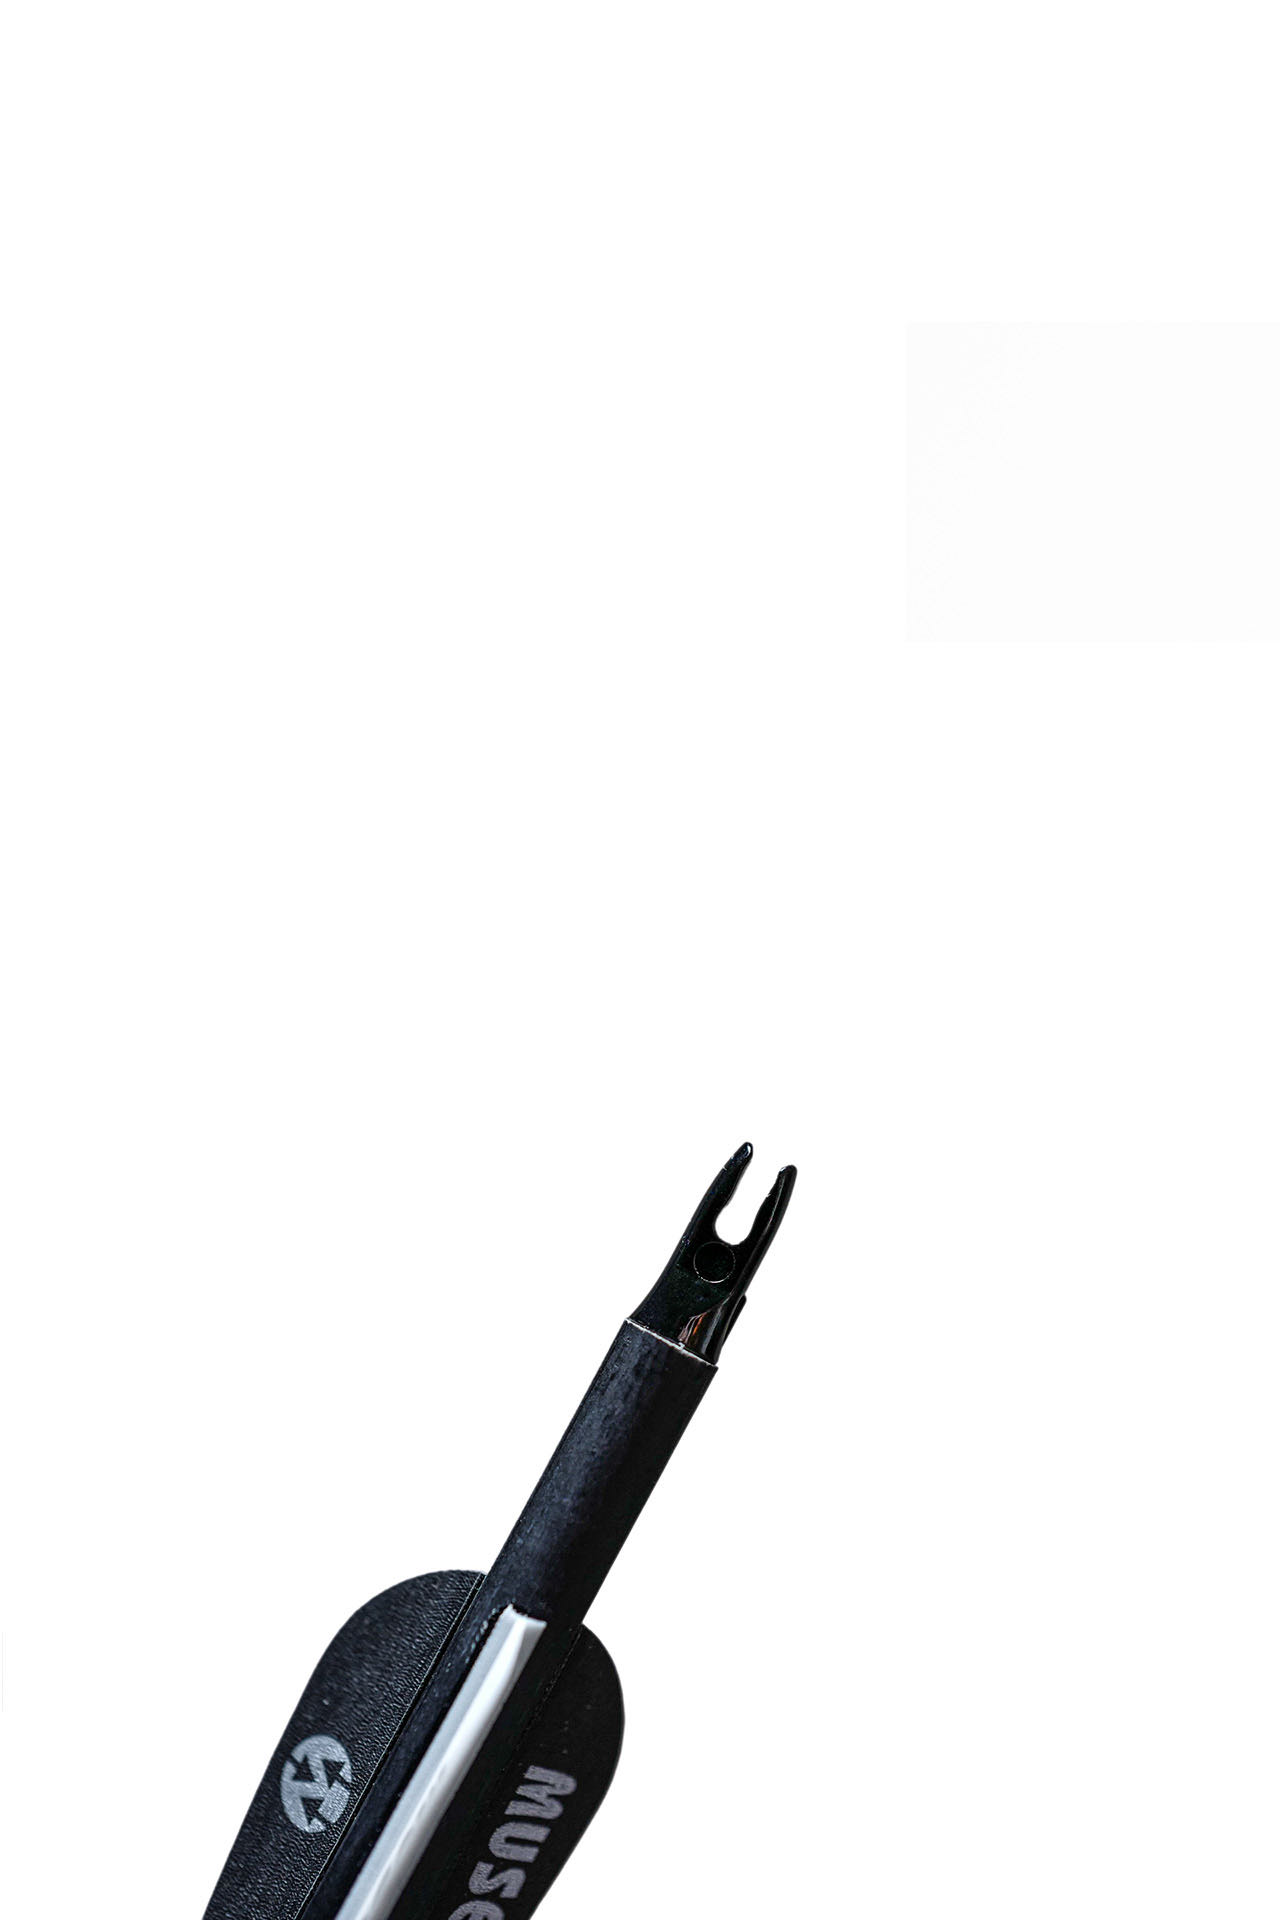 fengbao kung fu gadget musen pfeile schwarz carbon shop 1080 wien mit gummispitze endstueck